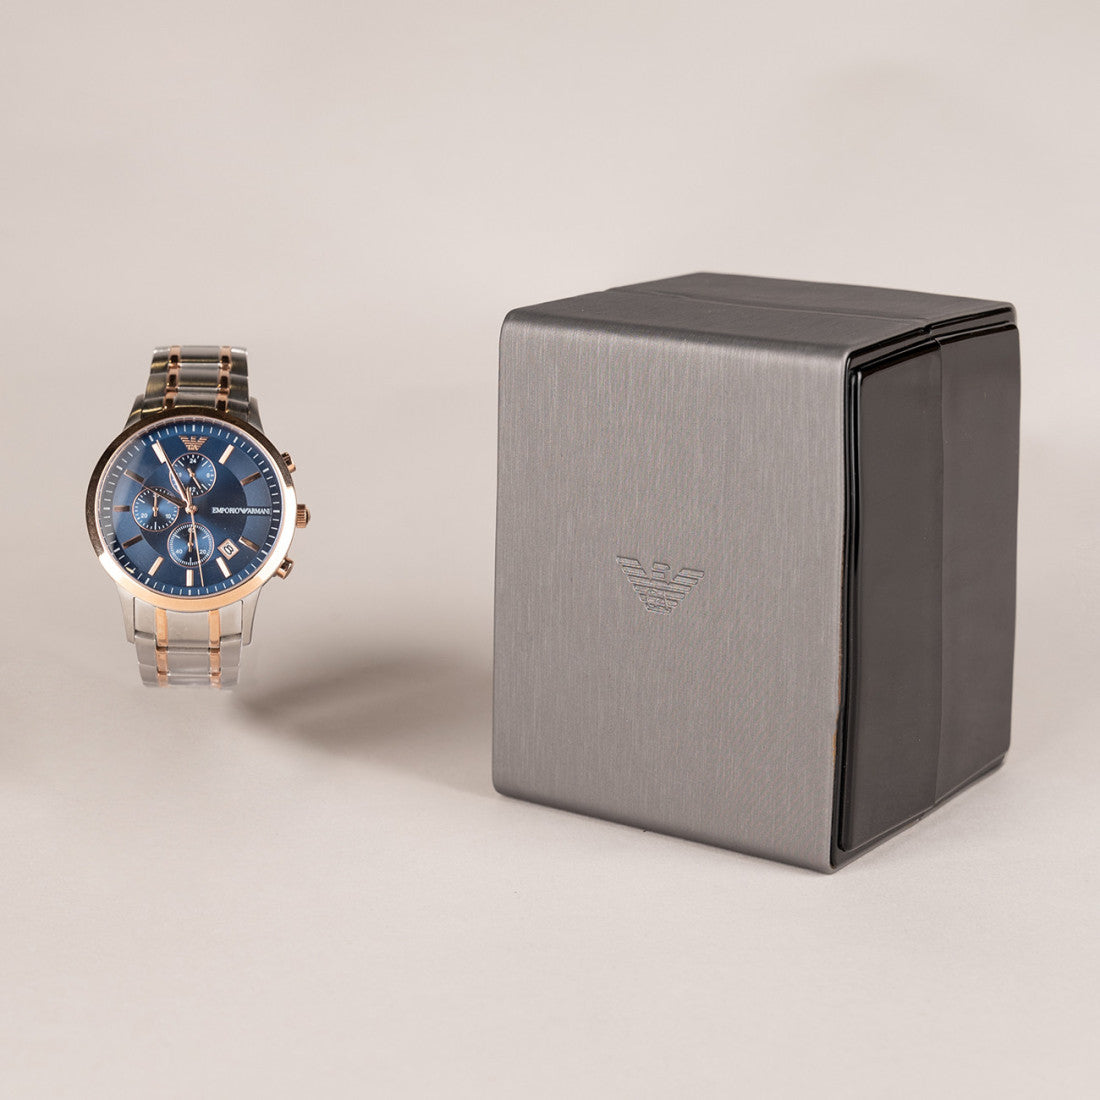 Emporio Armani Renato Chronograph Blue Dial Two Tone Steel Strap Watch For Men - AR80025